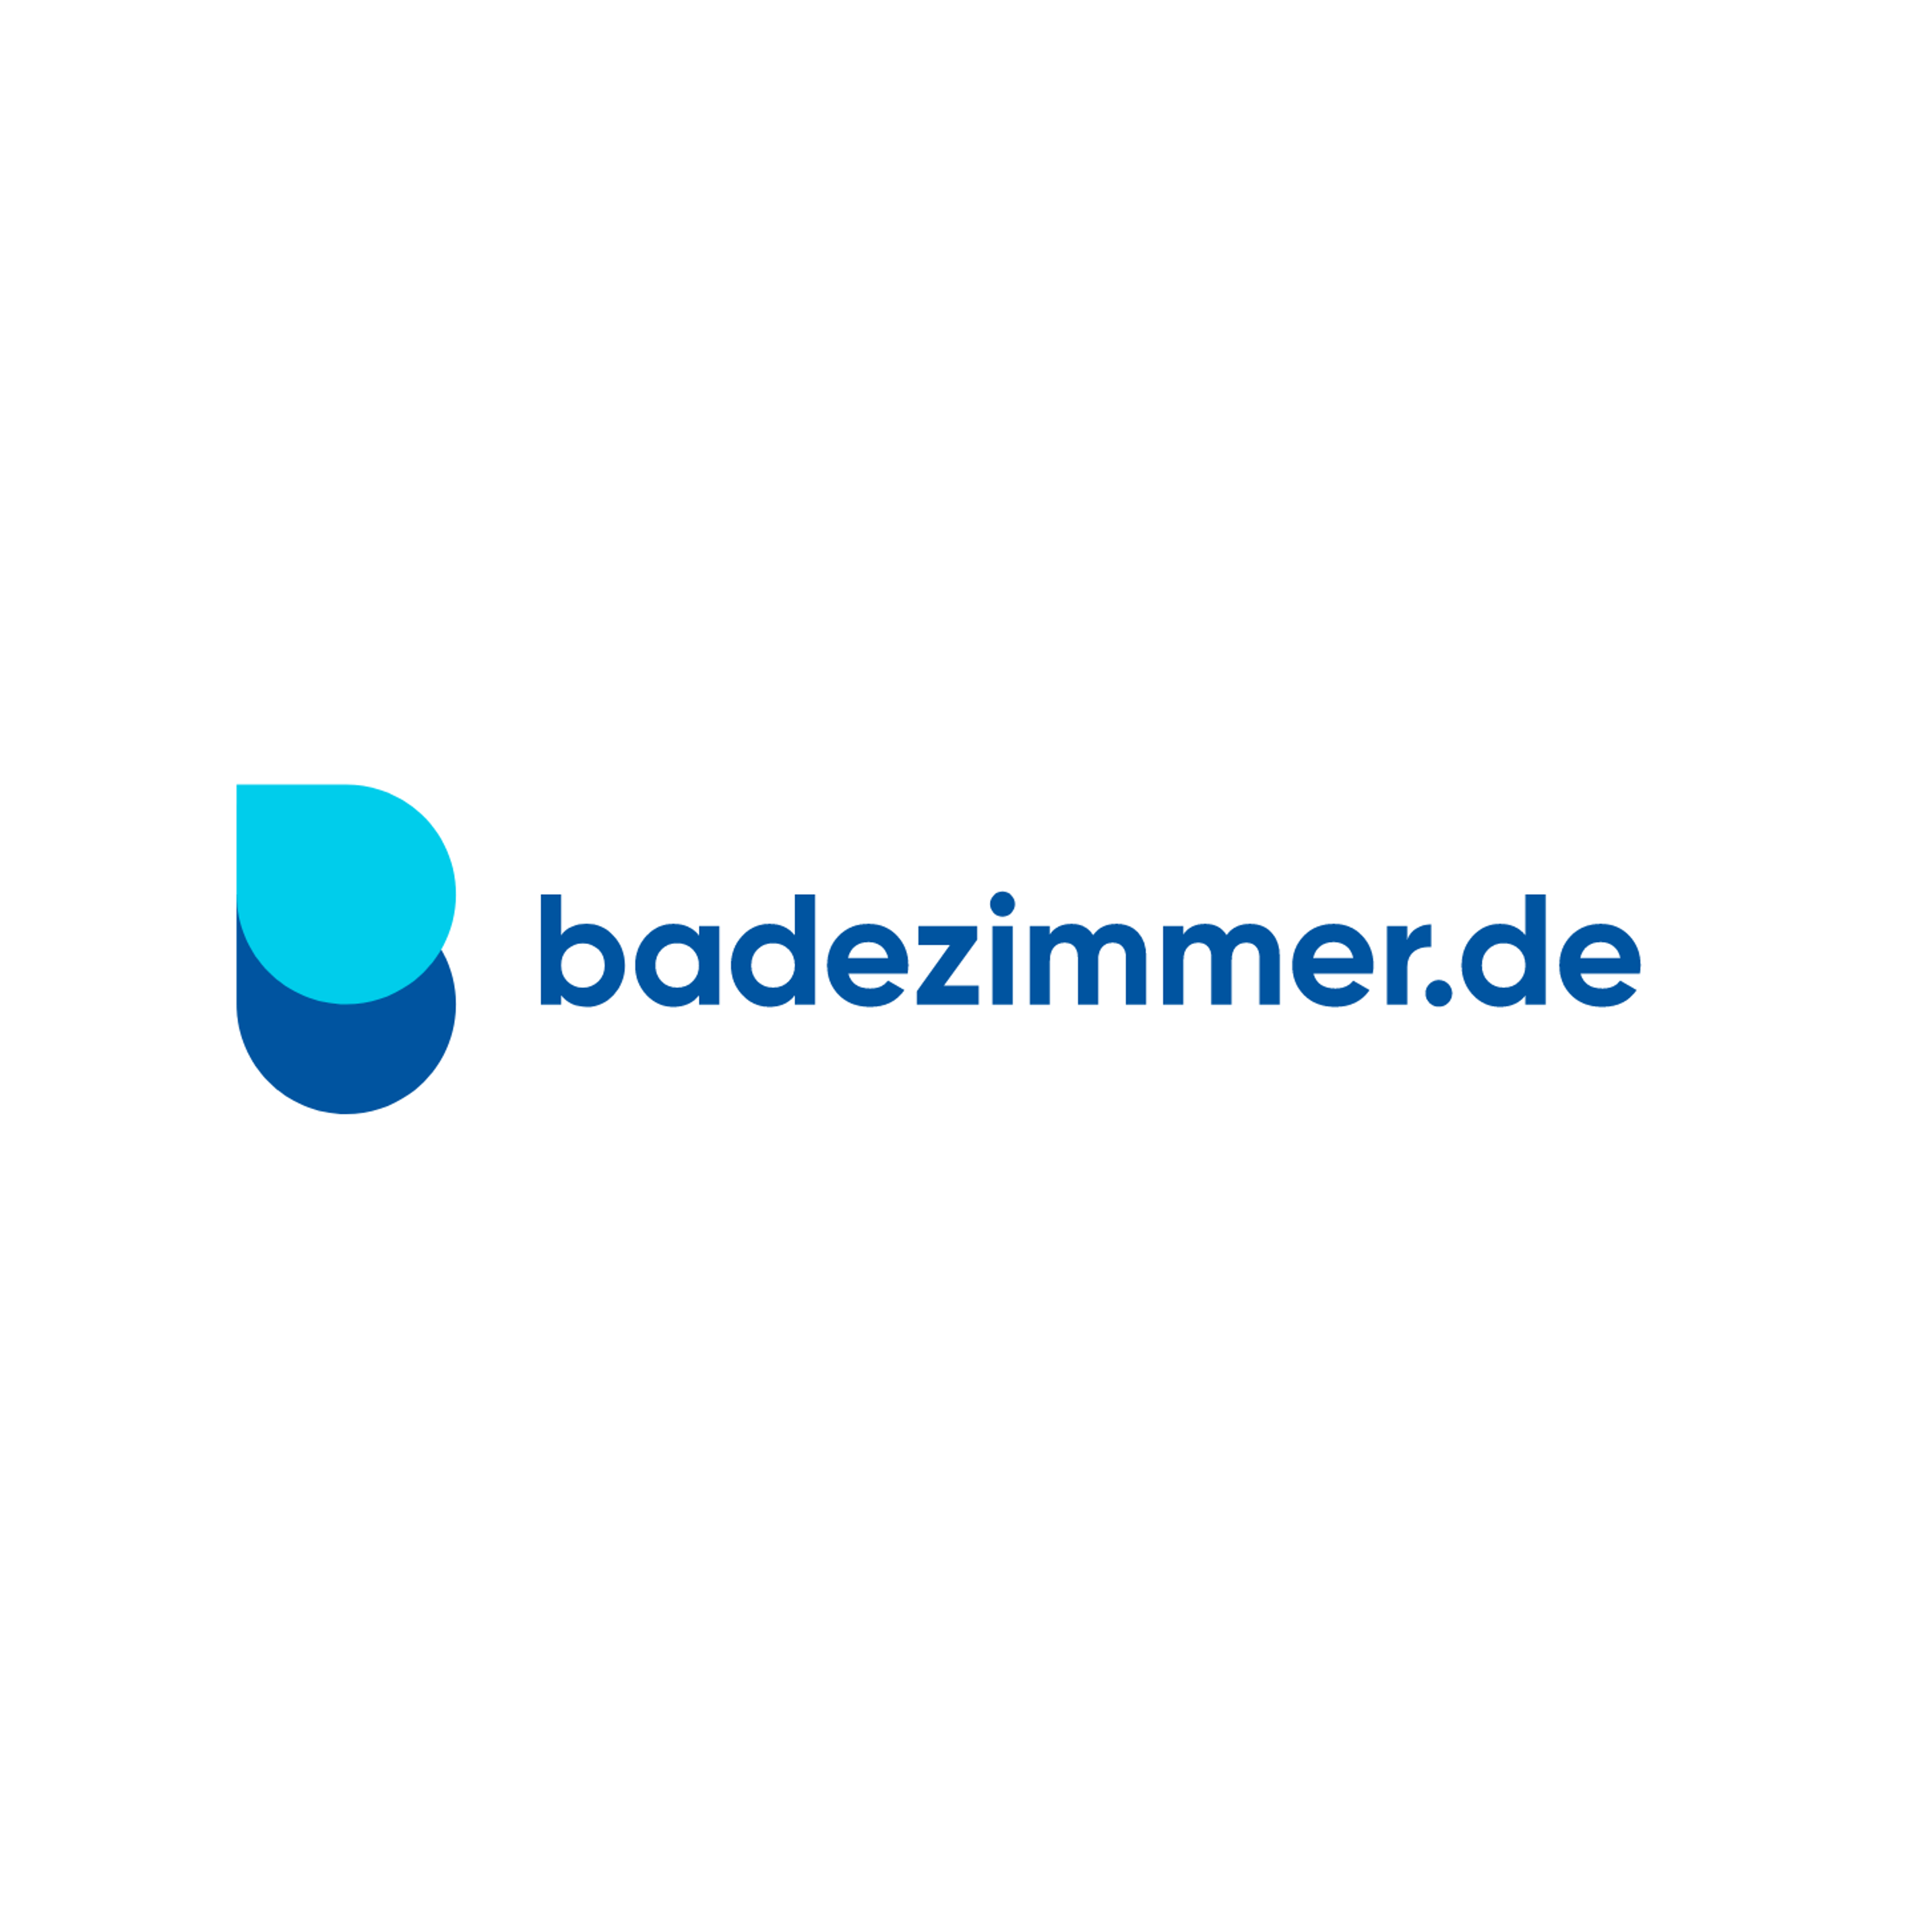 badezimmer.de Badausstellung Leverkusen - ELMER Logo